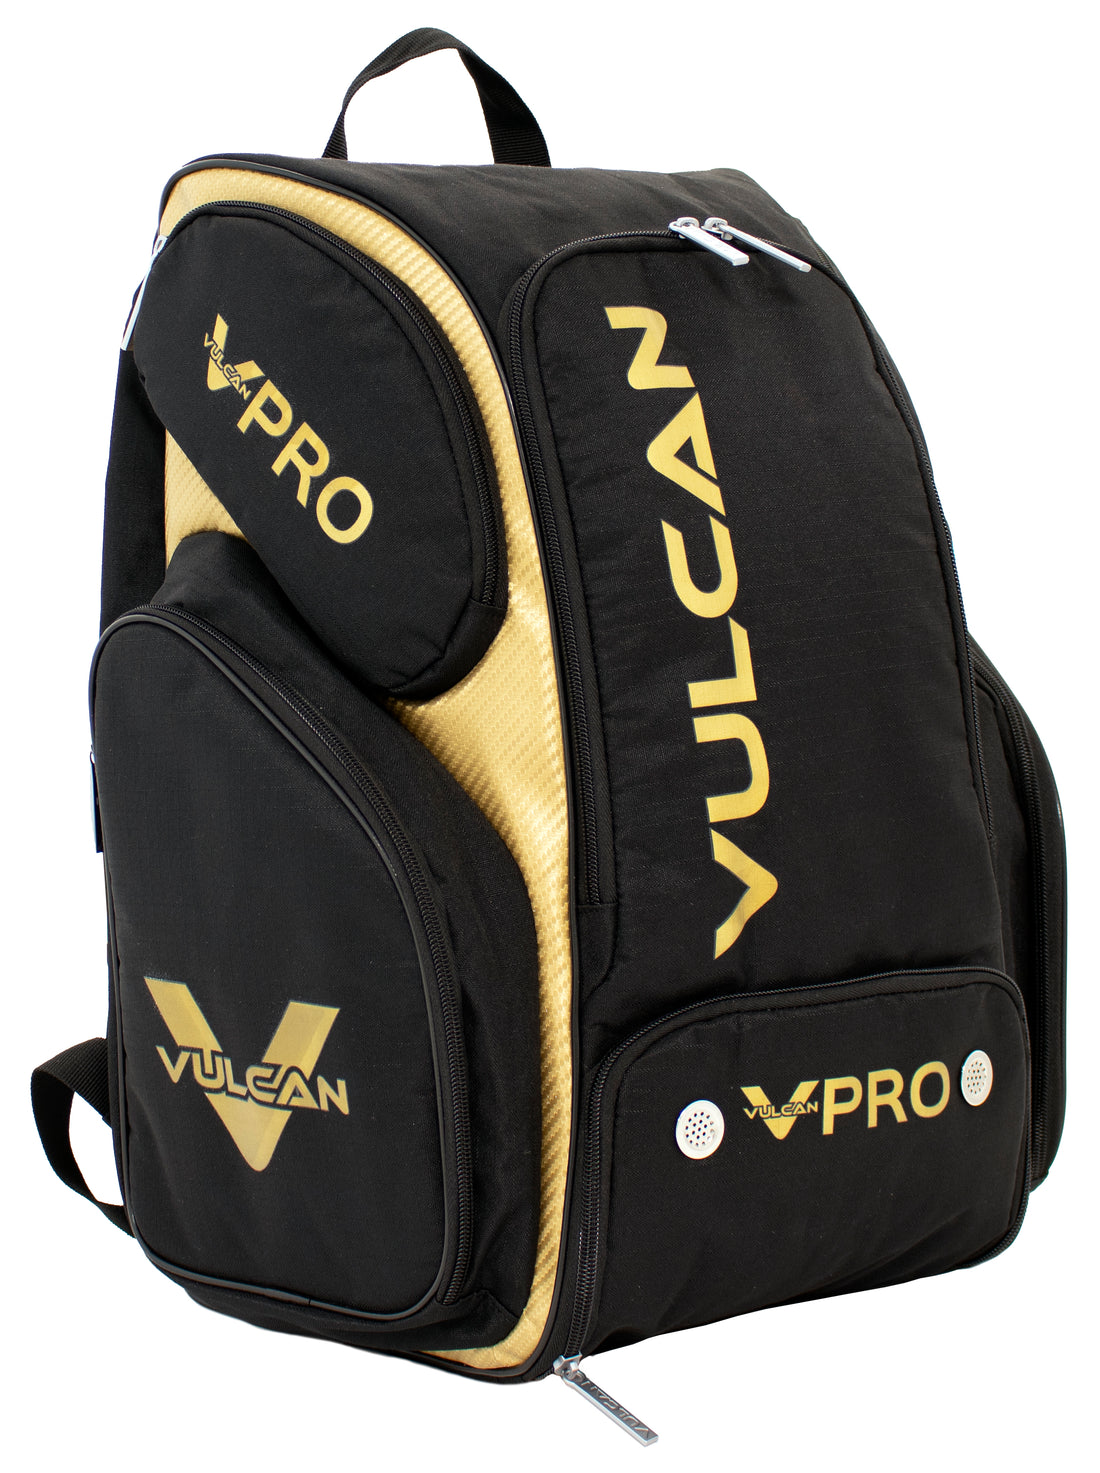 Vulcan VPro Backpack